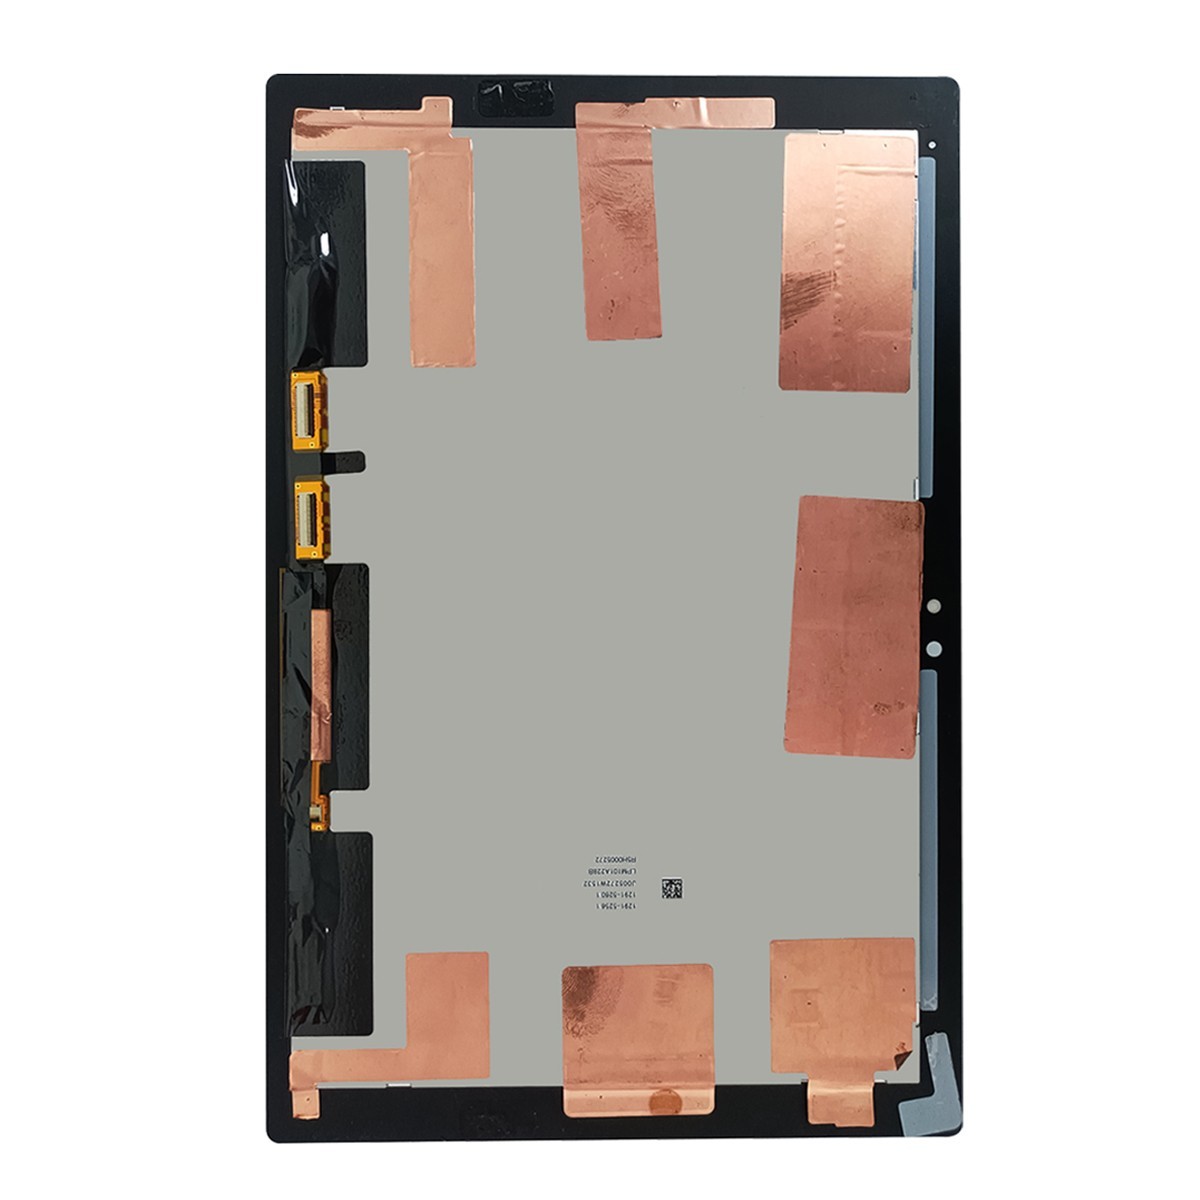 100％本物である商品 国内即日発送! Xperia Z4Tablet タッチスクリーン 白 SO-05G SOT31 SGP712JP ディスプレイ 液晶 パネル 交換 修理 パーツ 画面 ガラス割れ